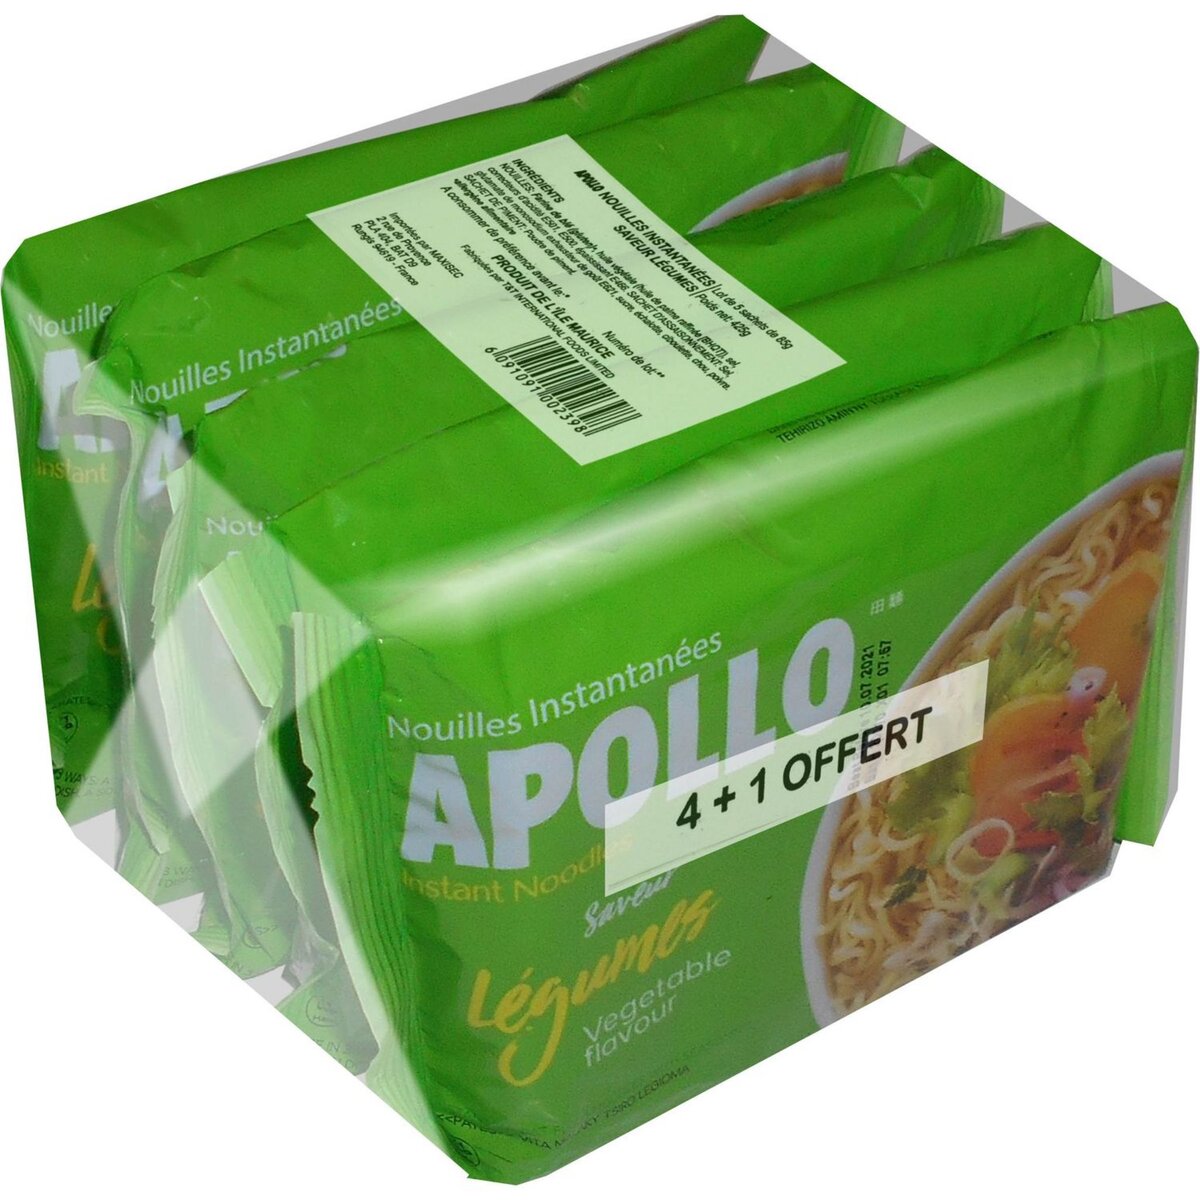 APOLLO Nouilles asiatiques saveur légumes 4+1 offert 425g